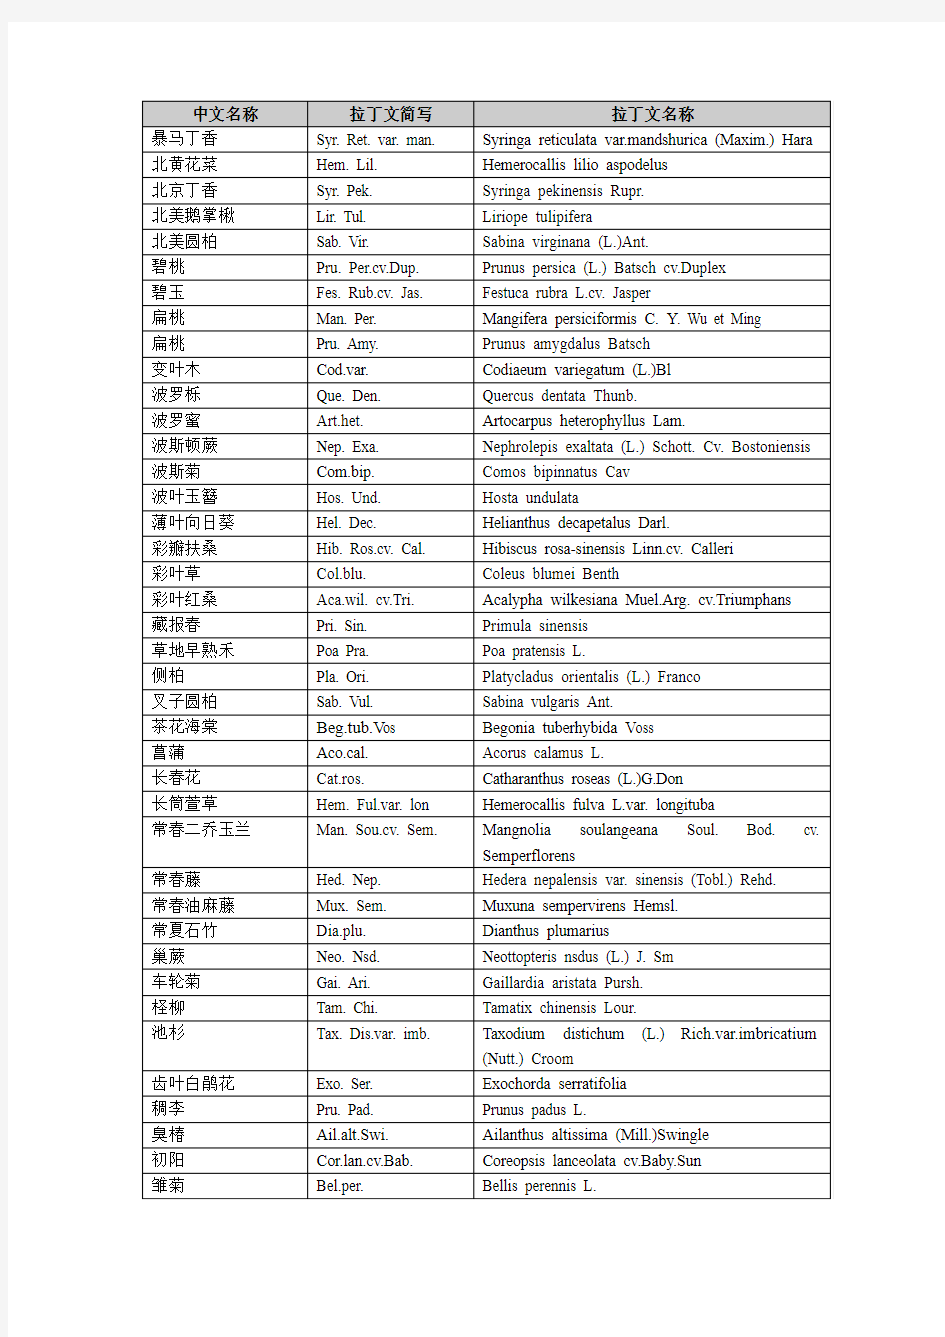 常用植物拉丁文中文目录表(按拼音排列)